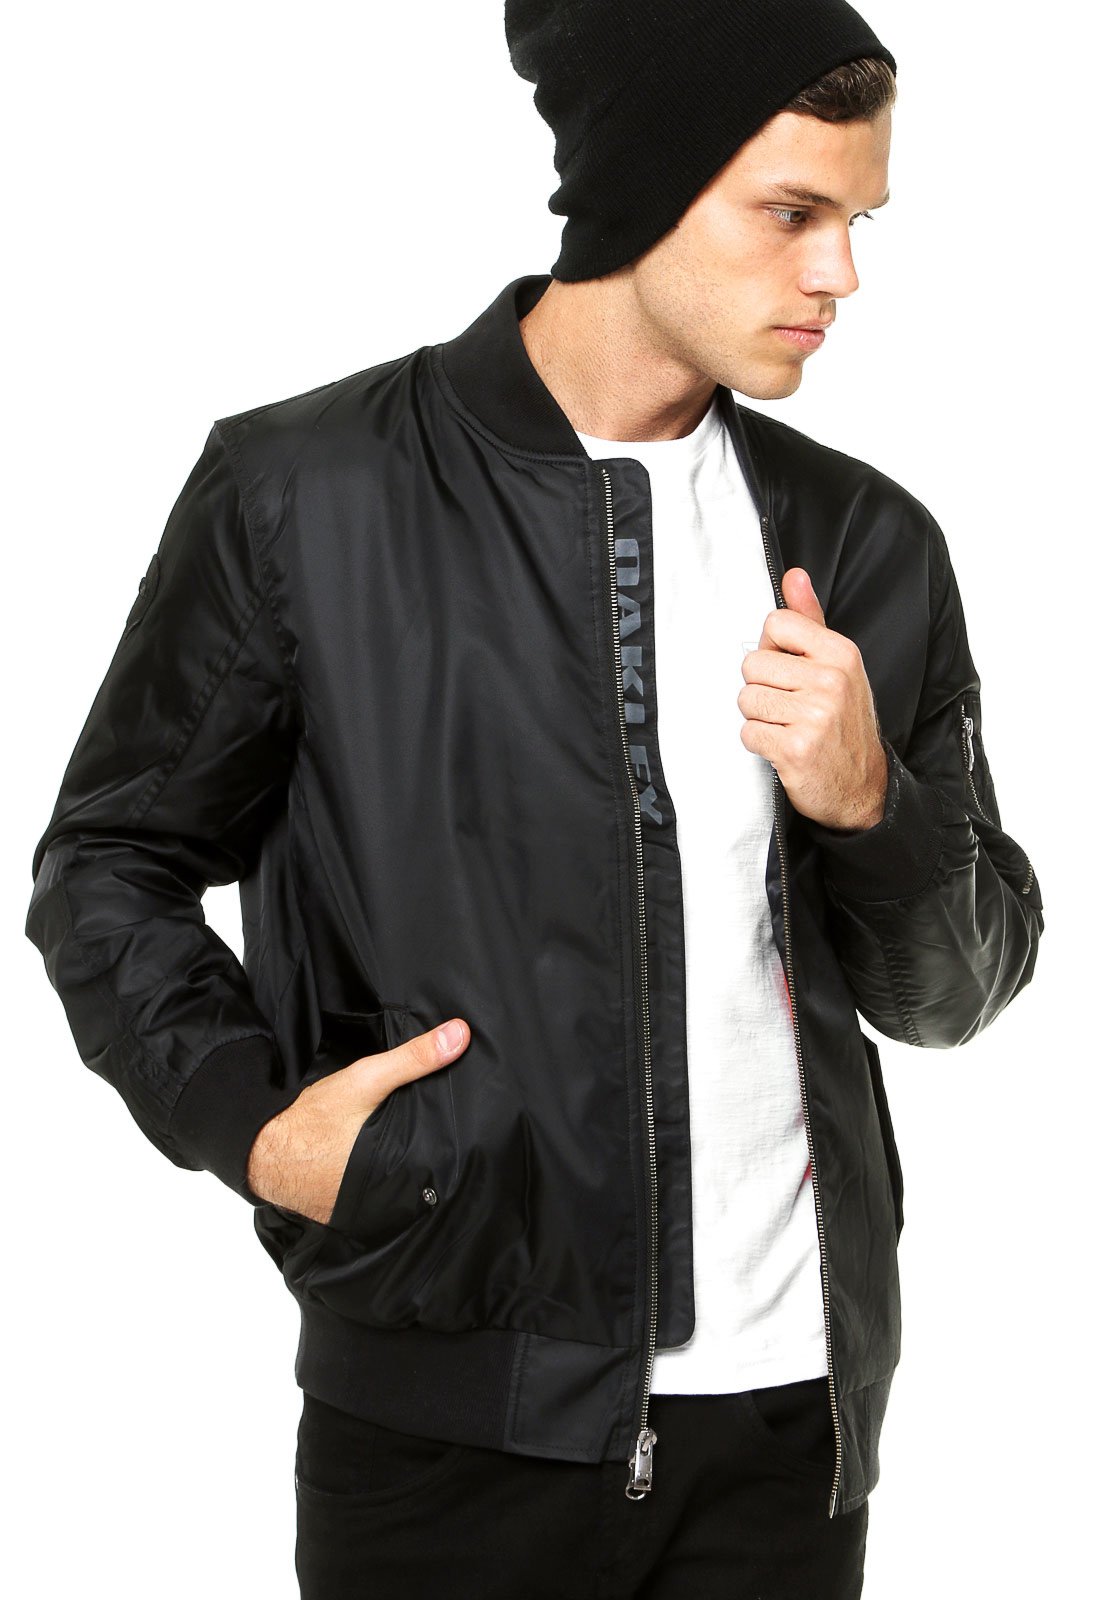 casaco preto masculino com ziper